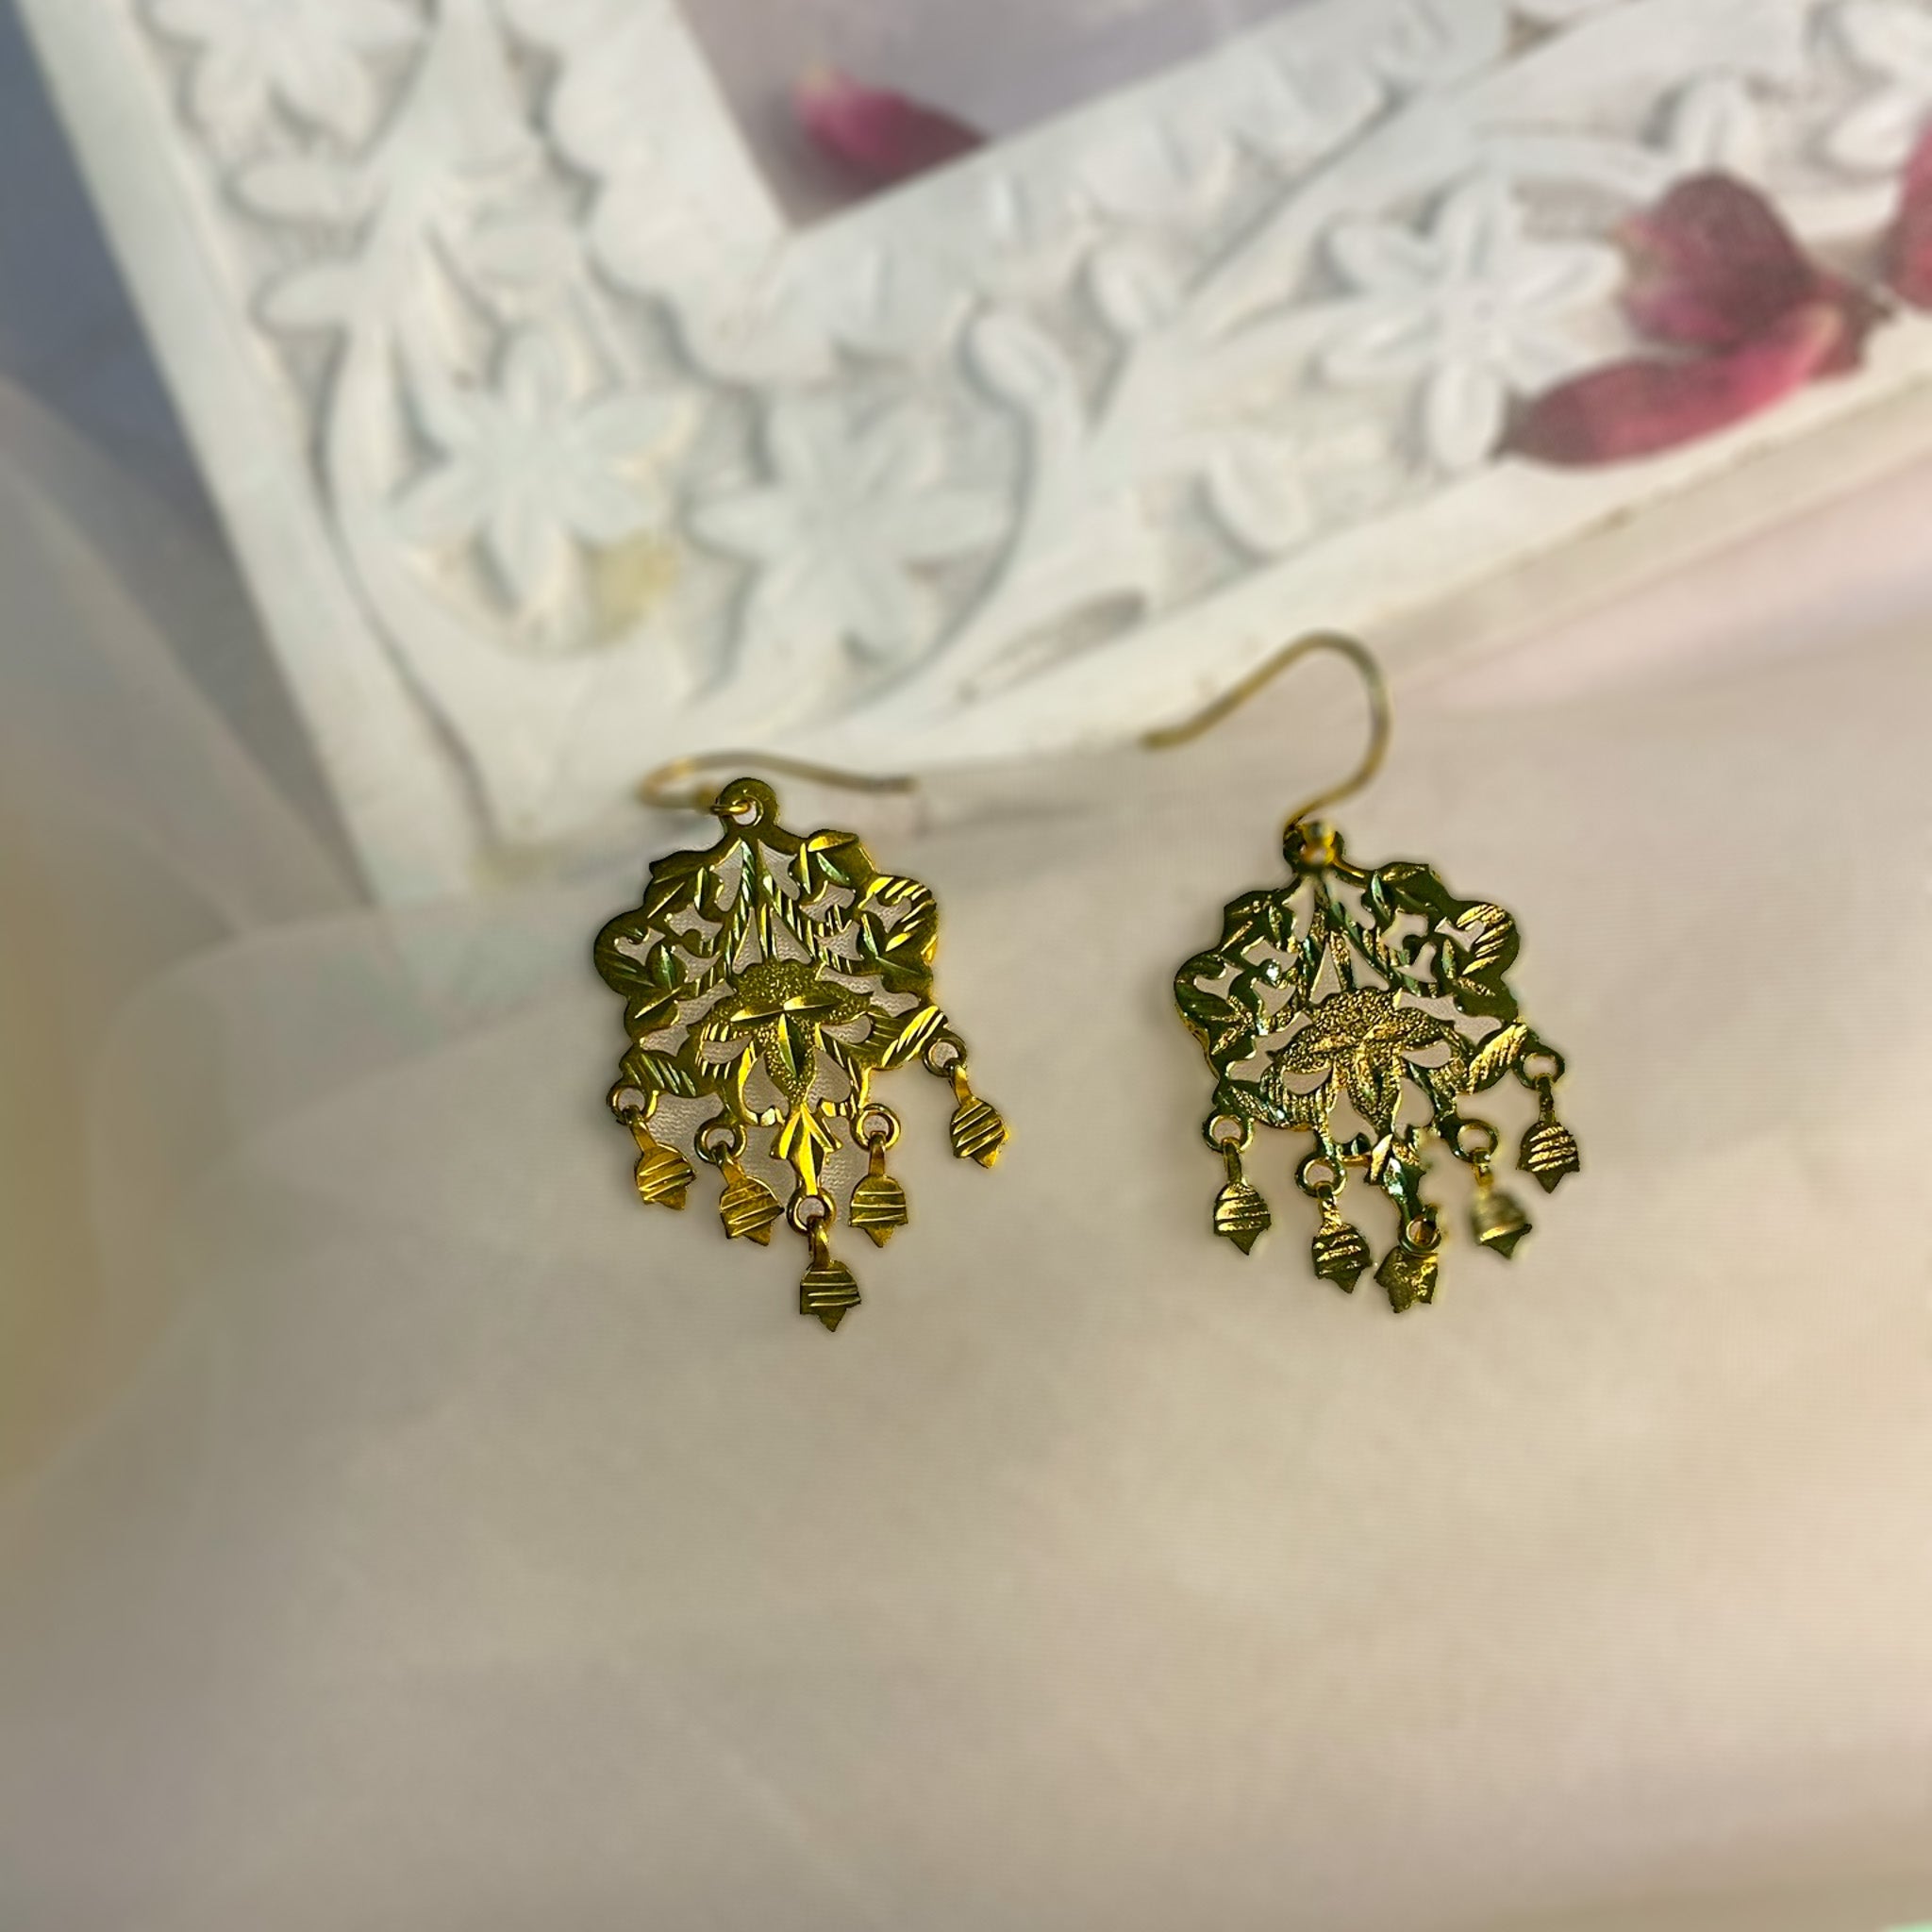 Buy American Diamond Jhumar Big Earrings/ad Earrings/american Diamond  Jhumkas/indian Earring Wedding Jhumka/rose Gold Diamond Jhumka Earrings/  Online in India - Etsy